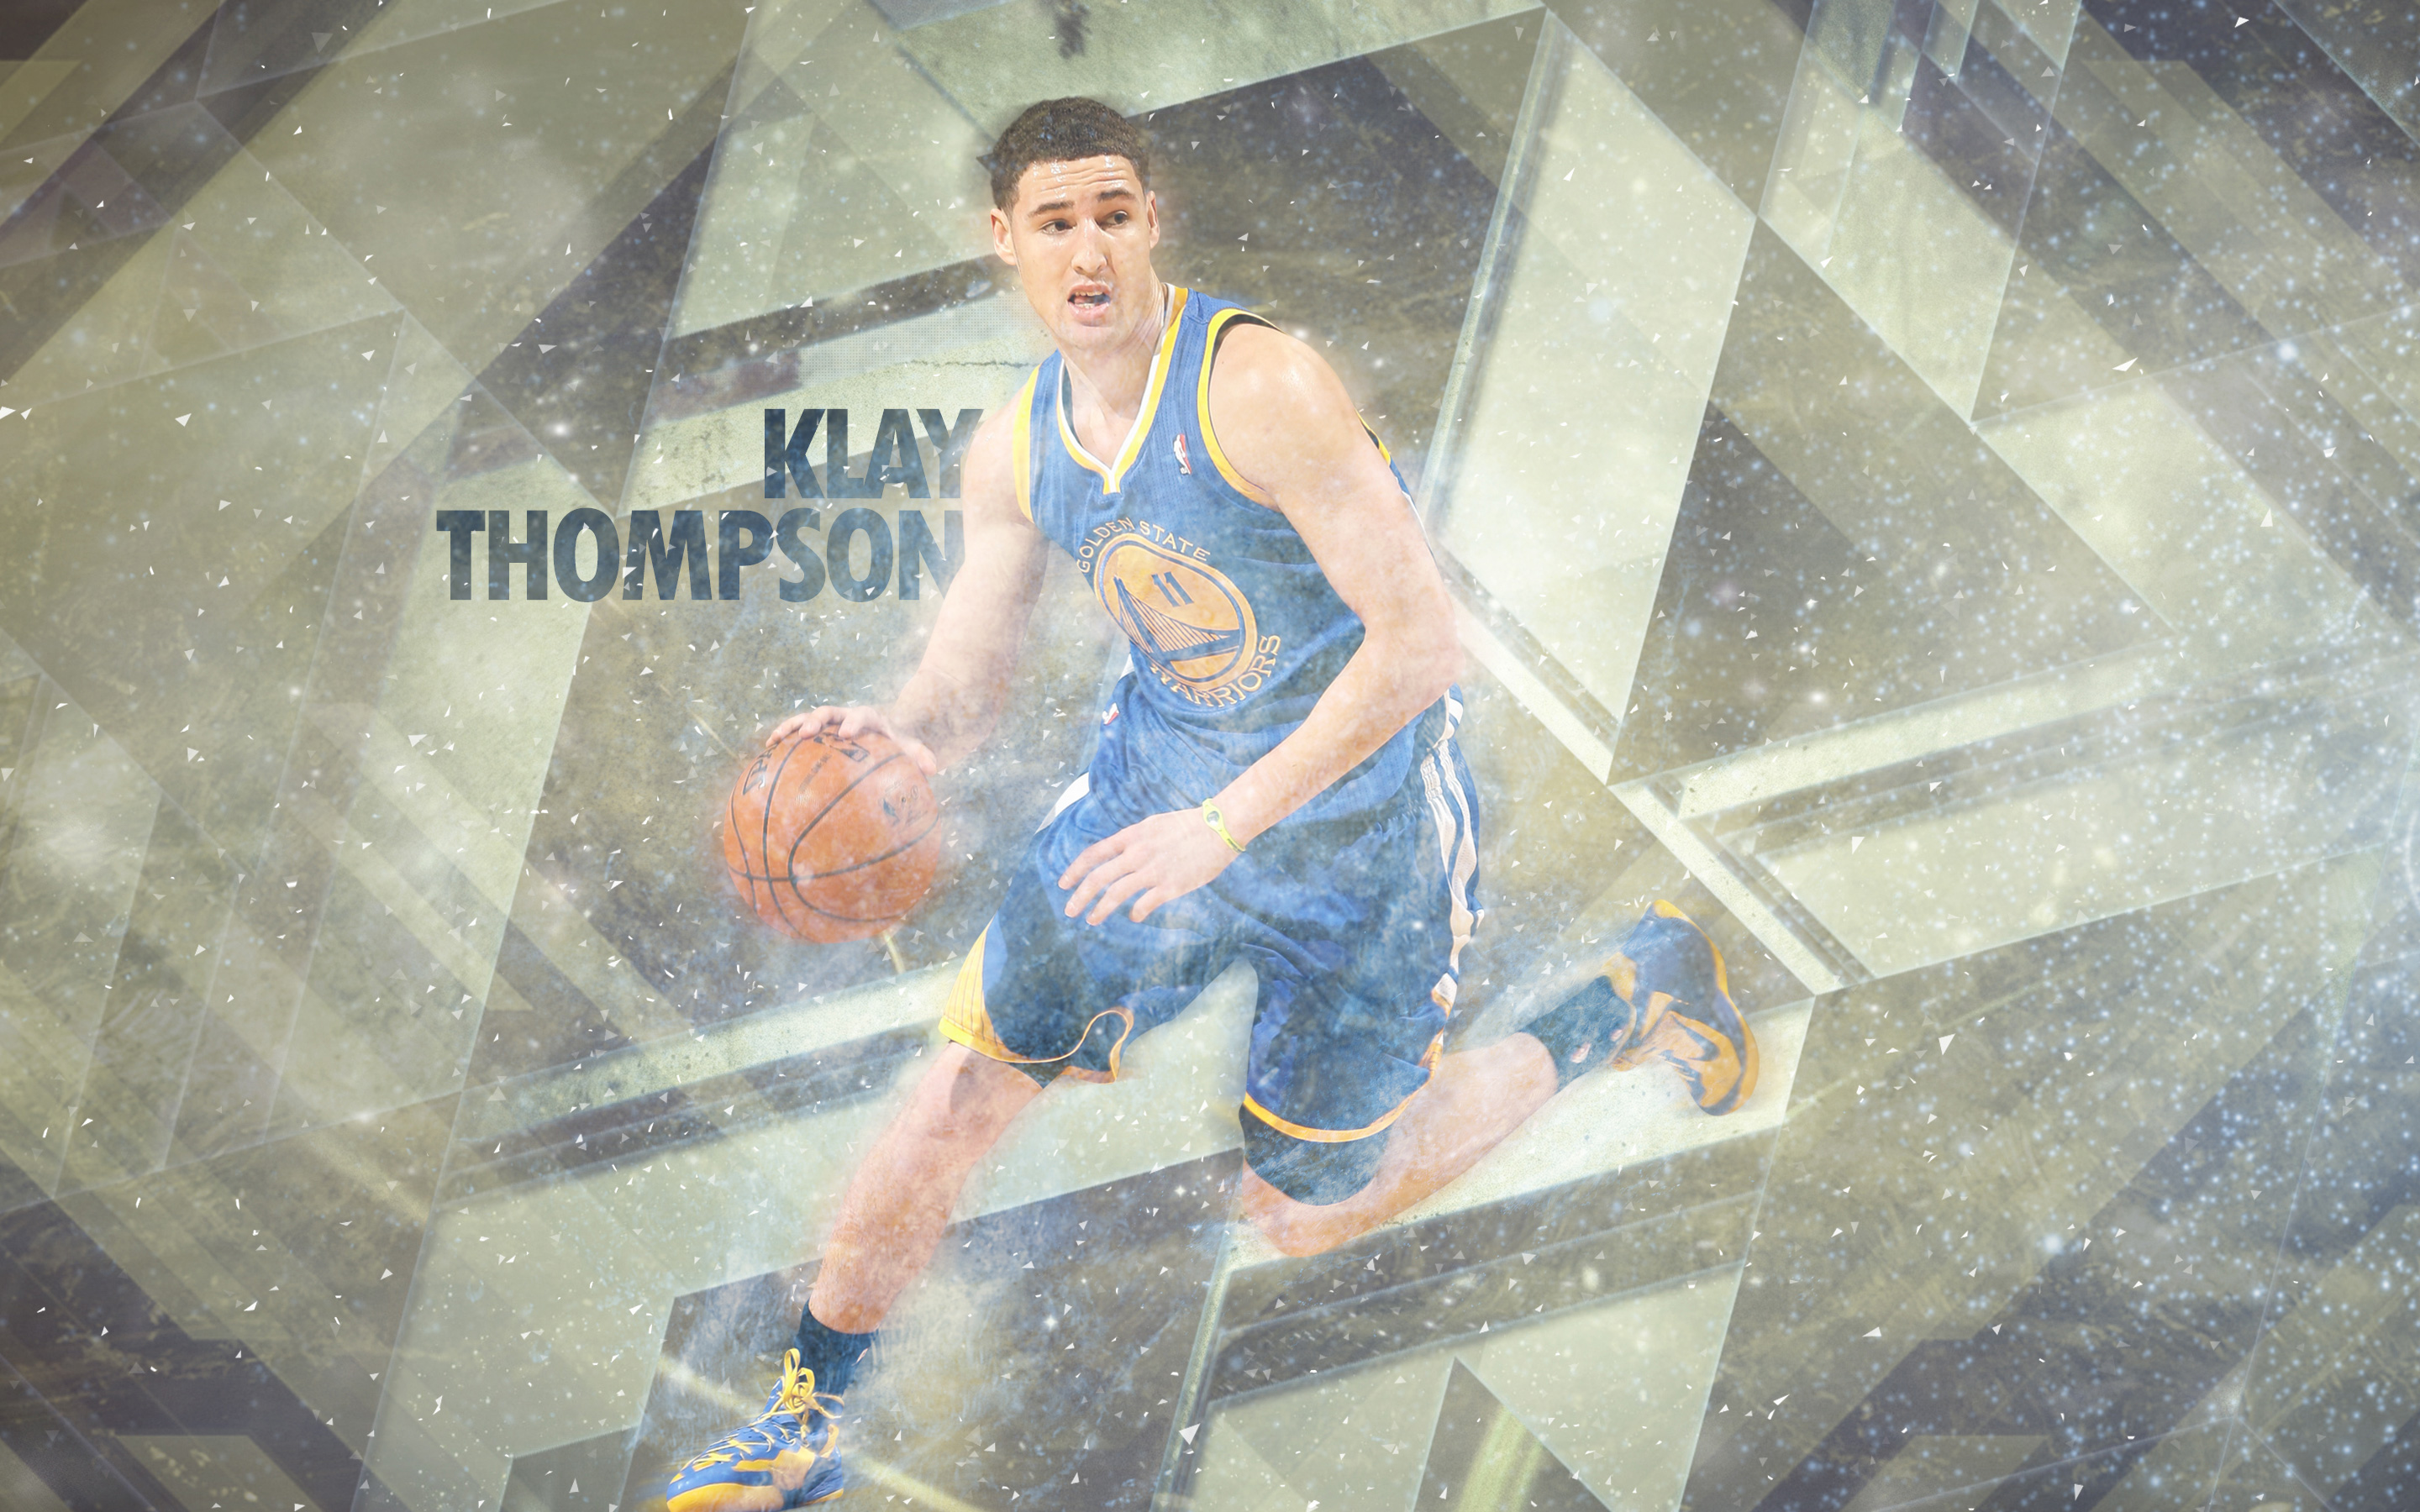 Klay Thompson  Klay thompson, Klay thompson wallpaper, Basketball players